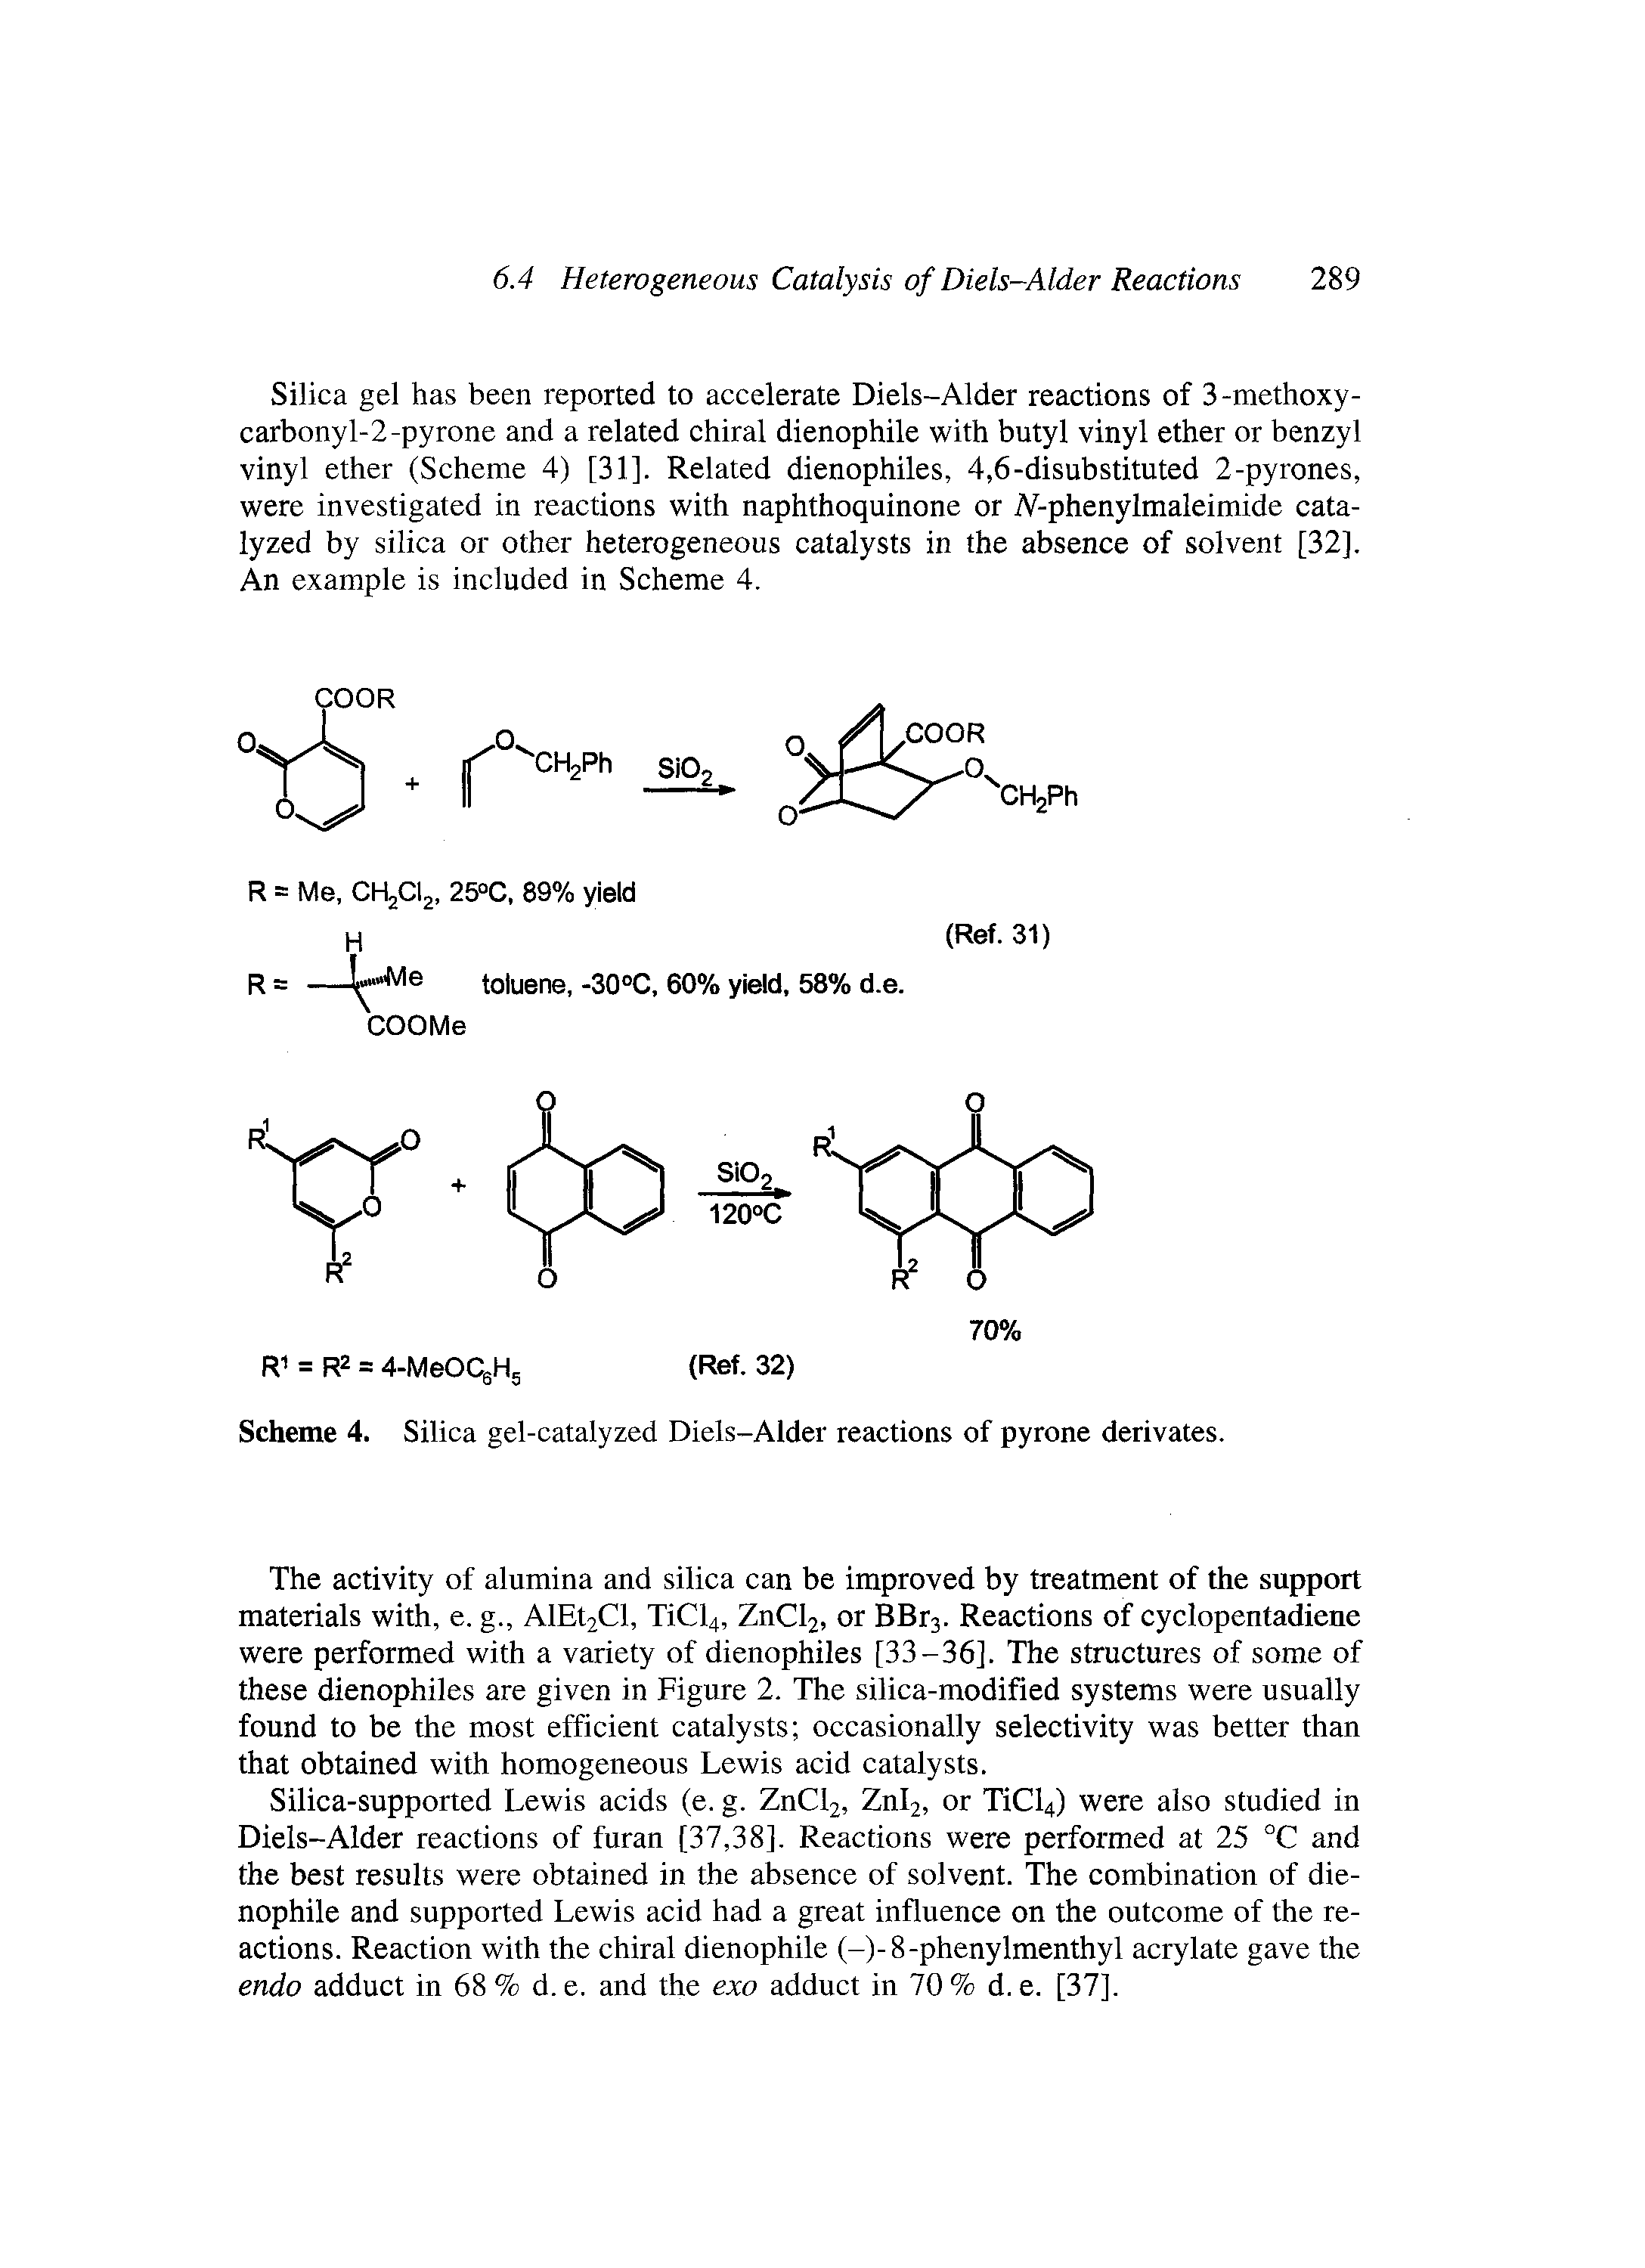 Scheme 4. Silica gel-catalyzed Diels-Alder reactions of pyrone derivates.